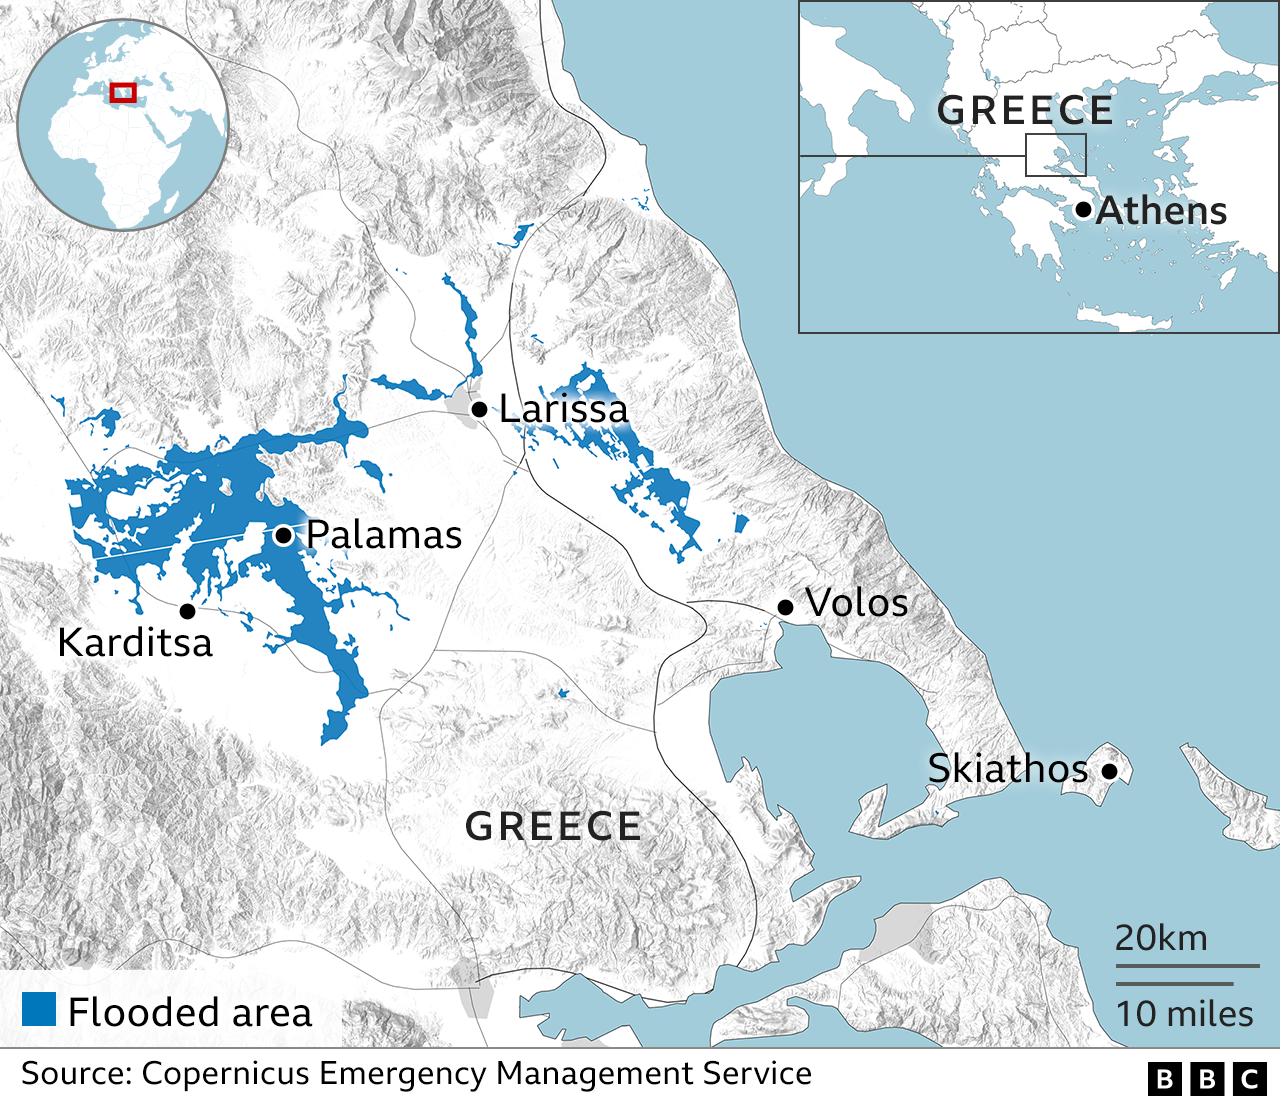 Карта, показывающая затопленные районы в центральной Греции